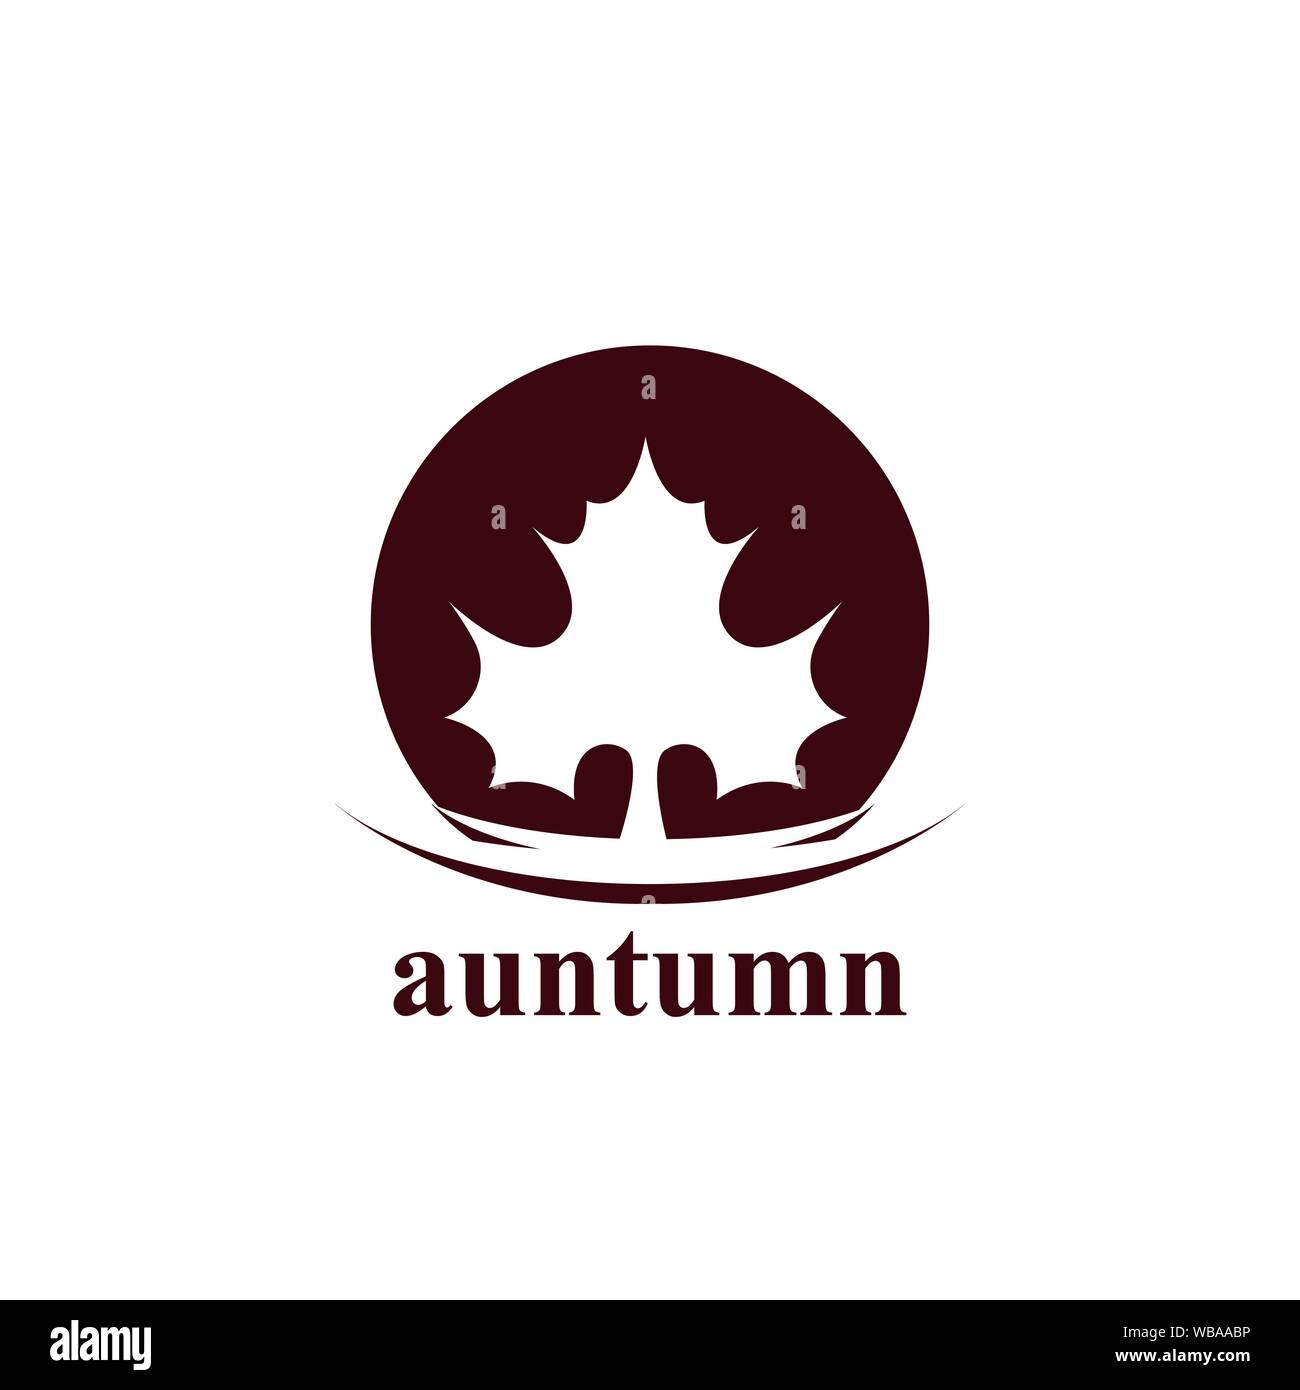 Autumn Logo Template vector image Stock Vector